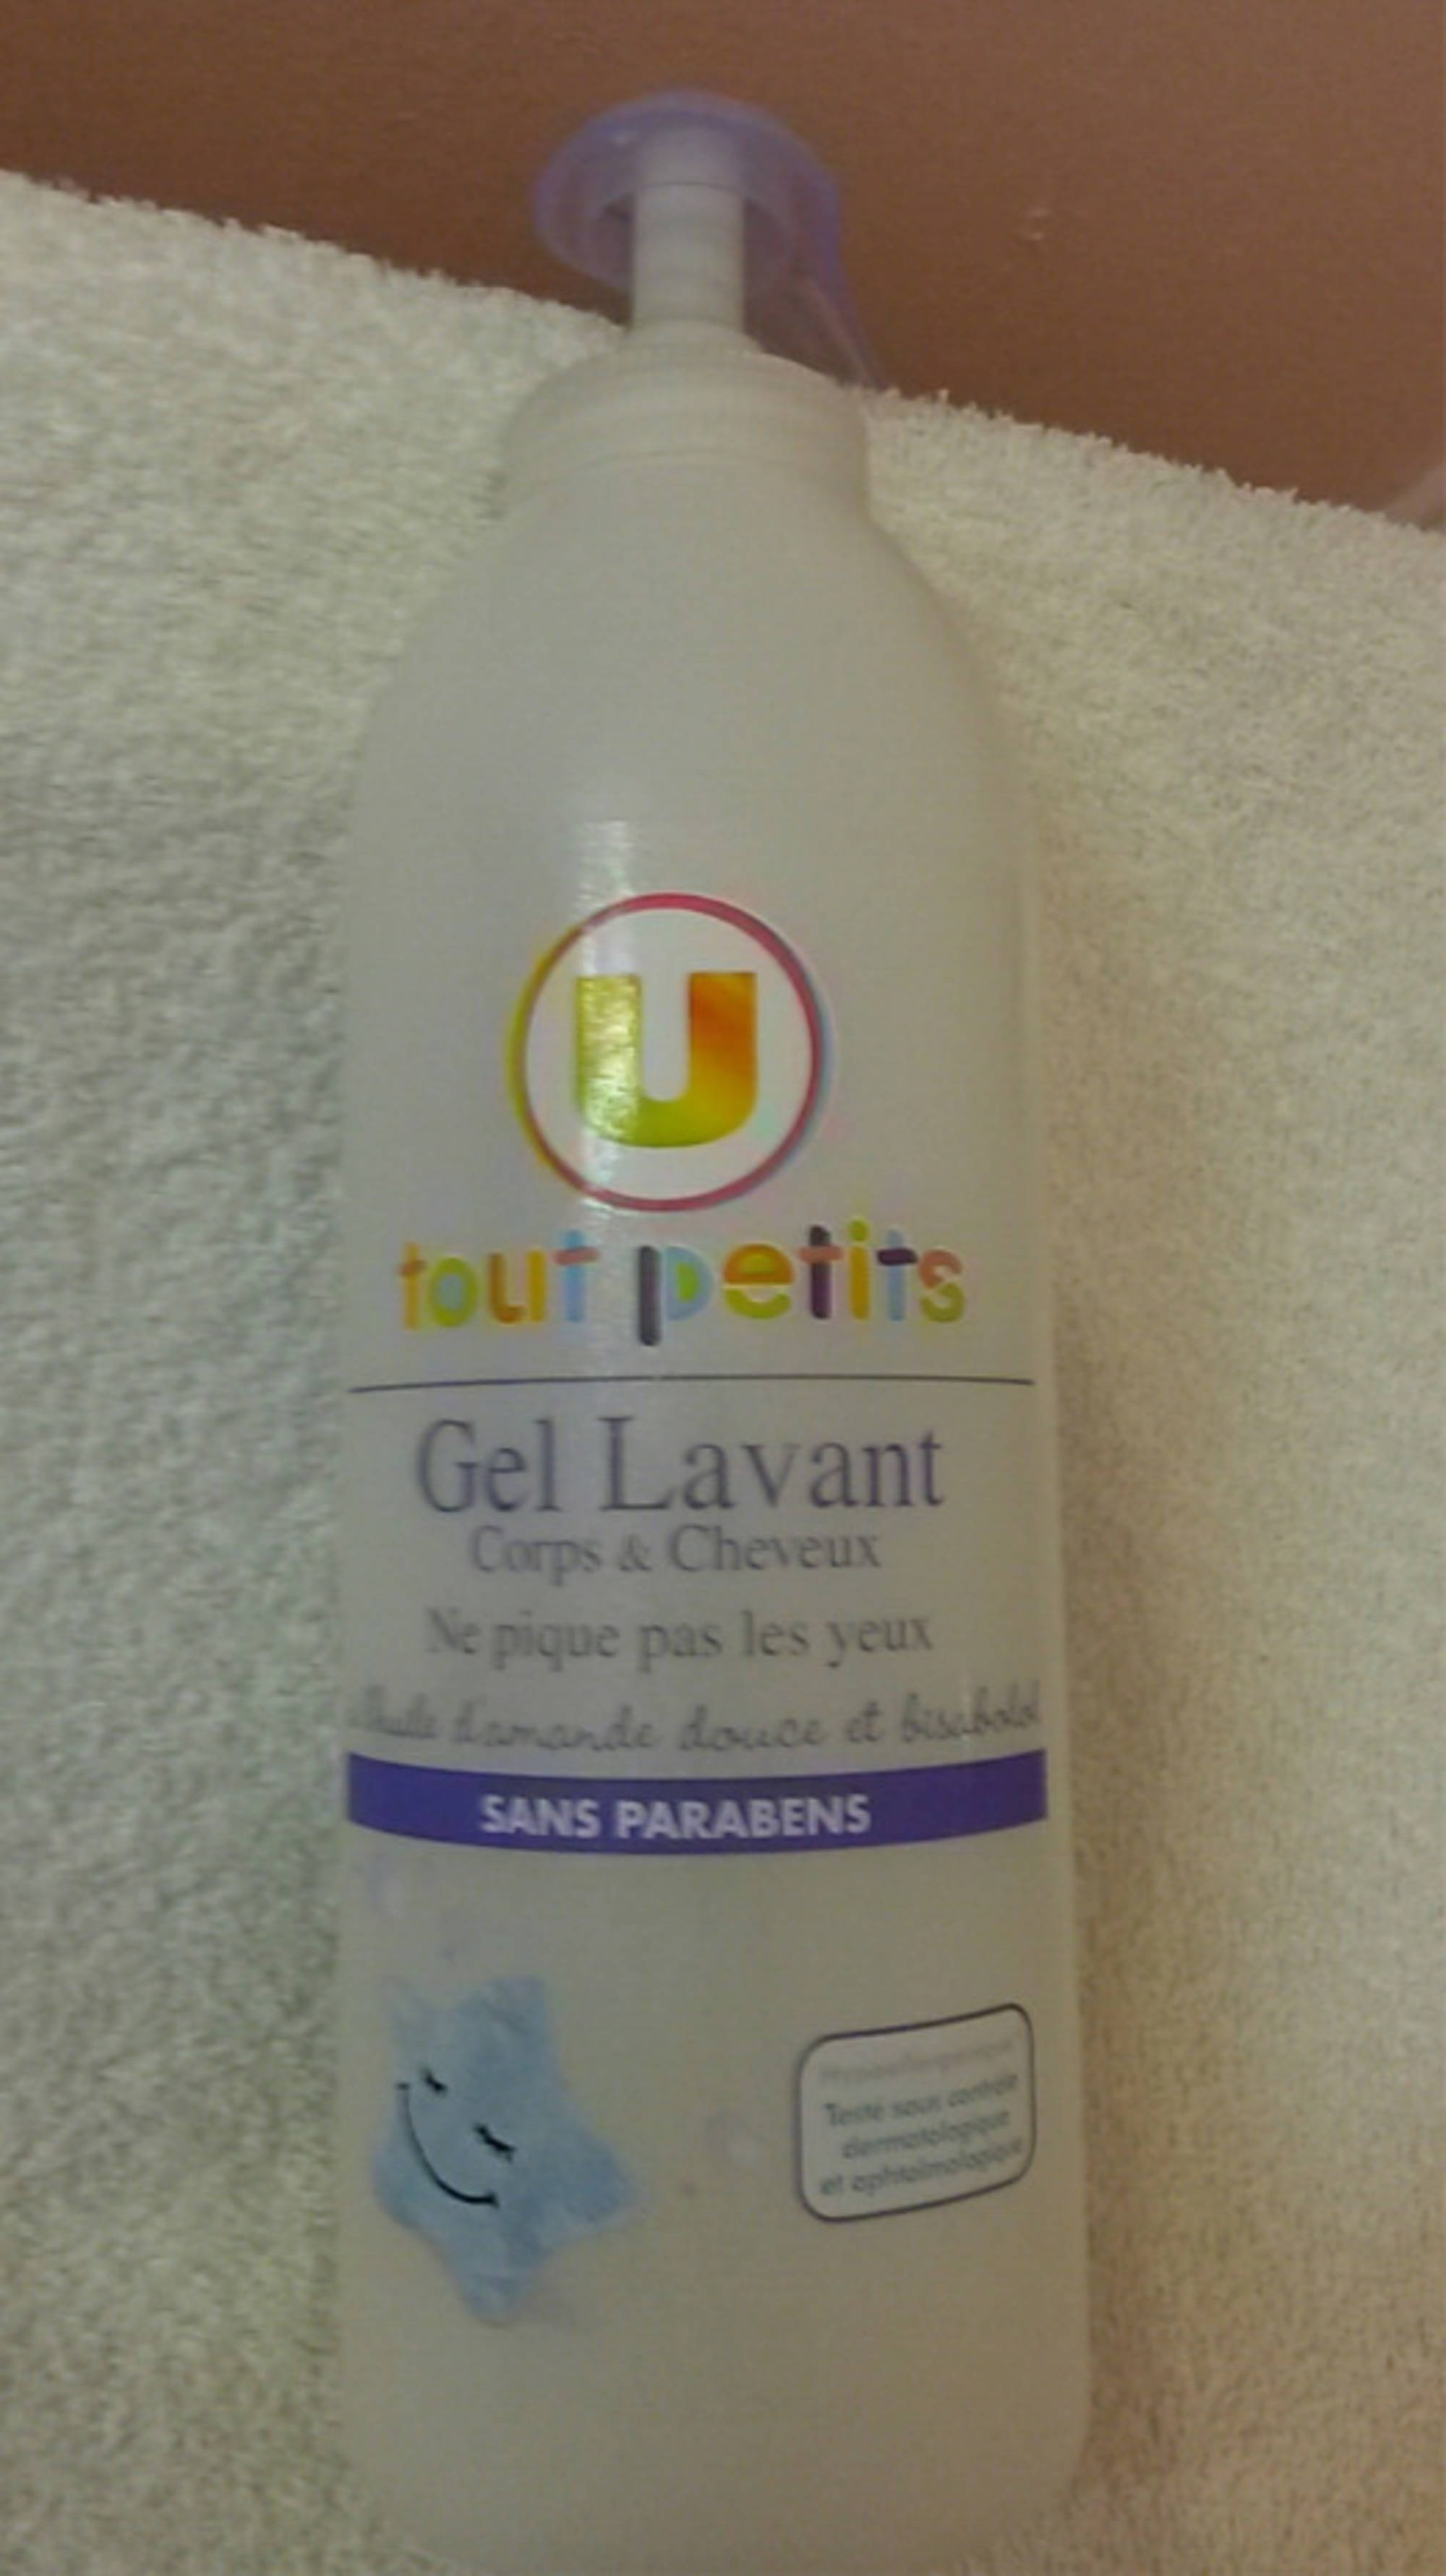 BY U - Tout petits - Gel lavant corps & cheveux bébé